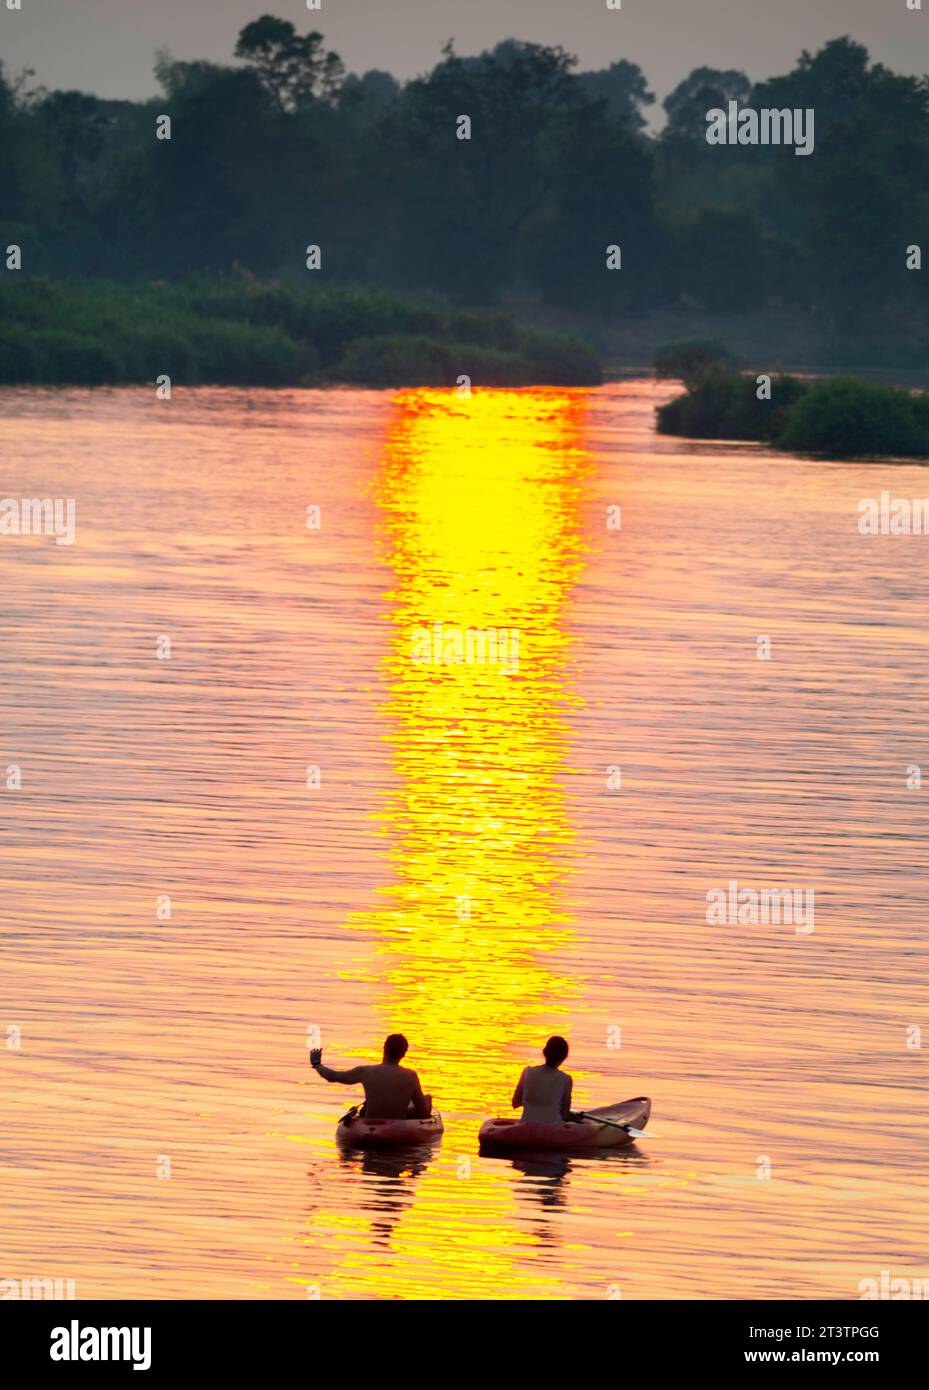 Sagome di due figure umane in kayak, che attraversano le calme e tranquille acque del Mekong, attraverso raggi di luce dorata riflessa sull'acqua, Foto Stock